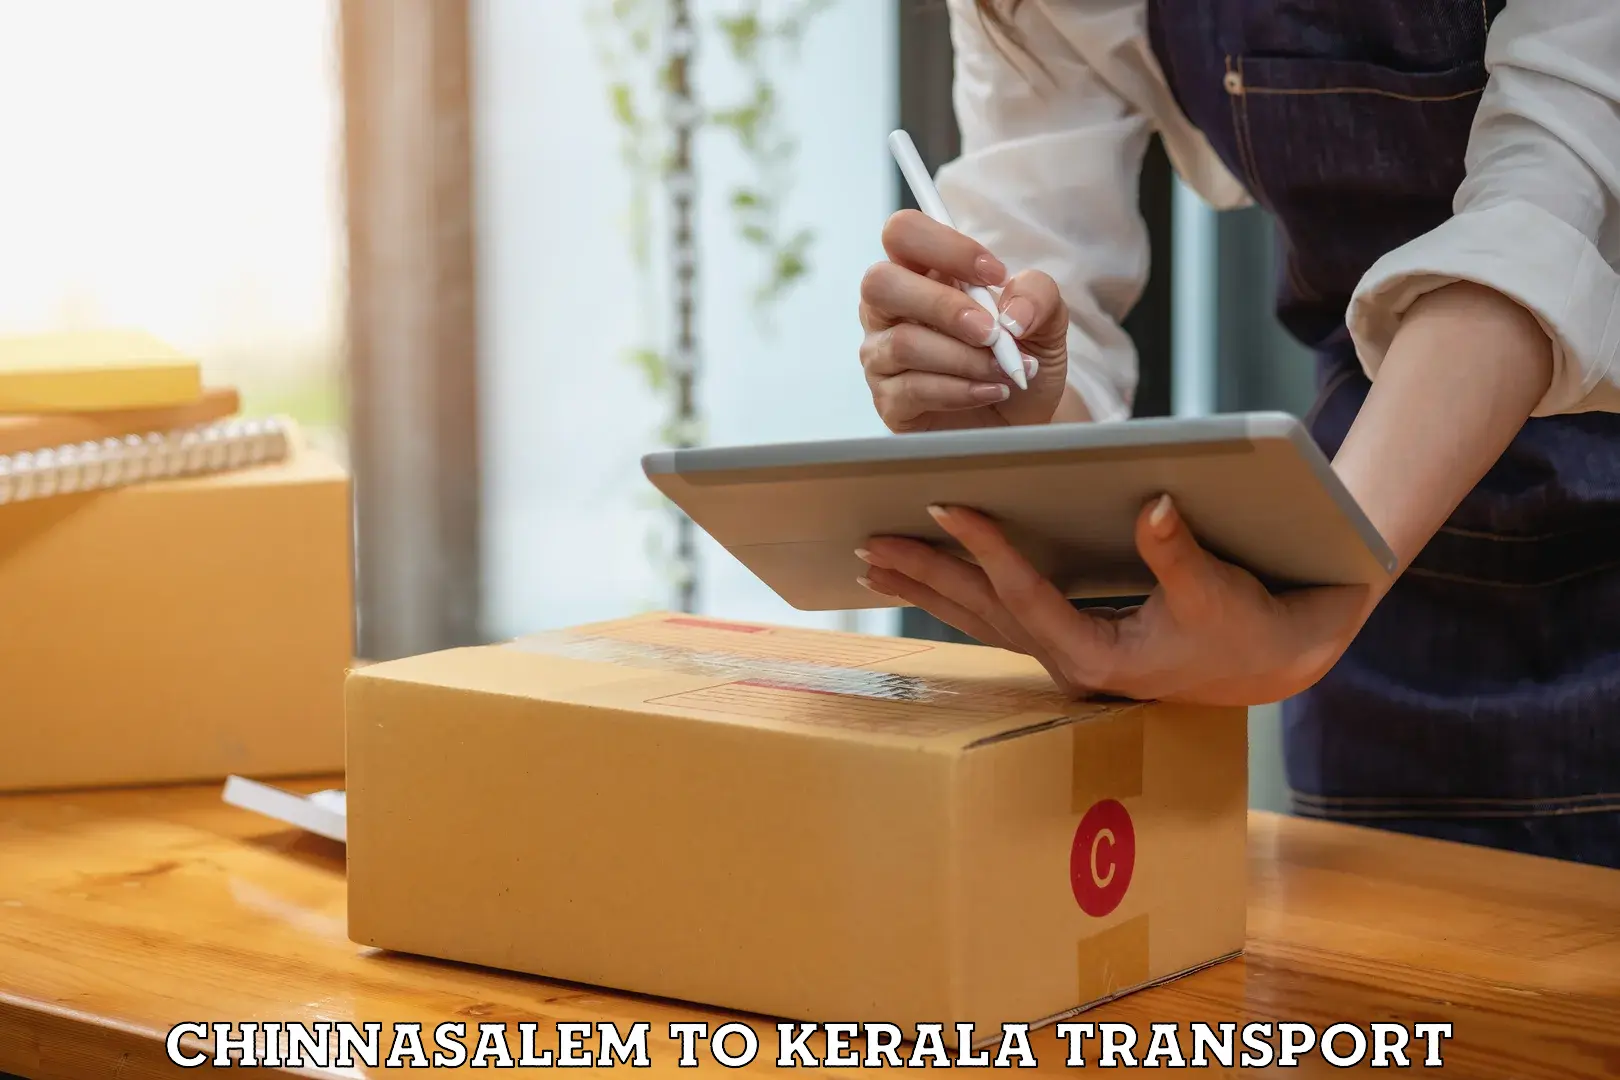 Door to door transport services Chinnasalem to Kerala